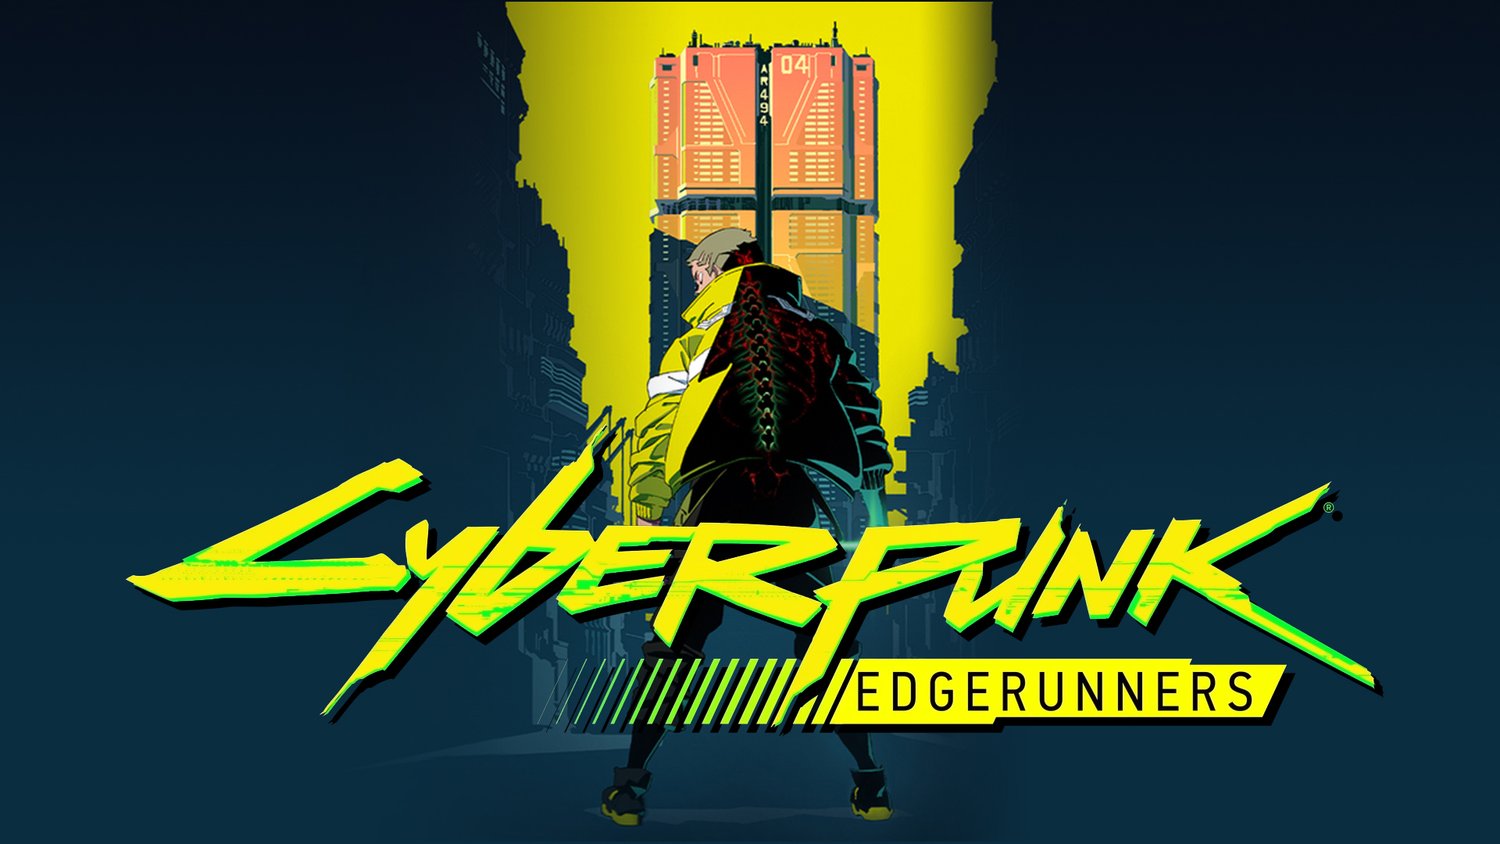 Cyberpunk Edgerunners David Mobile Wallpaper by DamionMauville on DeviantArt